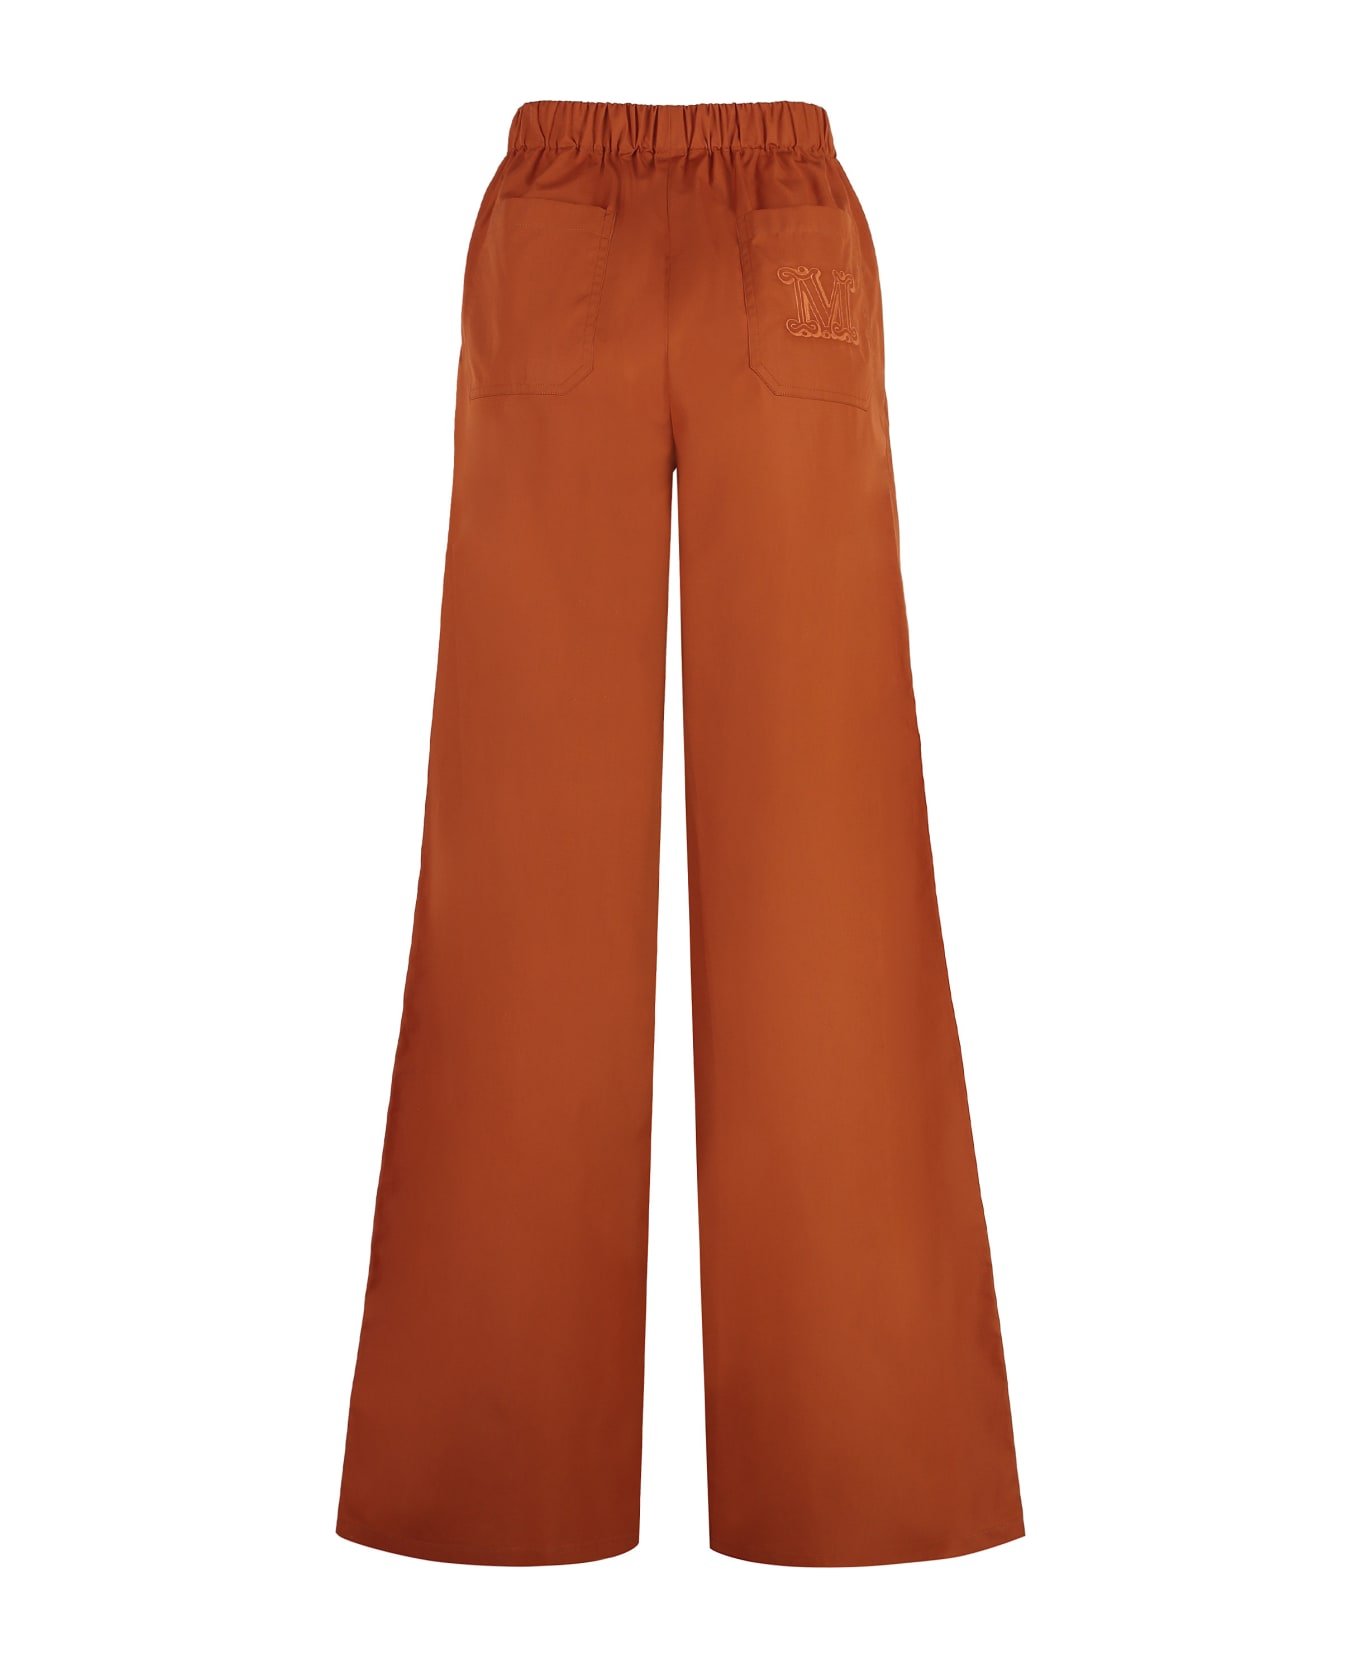 Max Mara Navigli Cotton Trousers - Orange